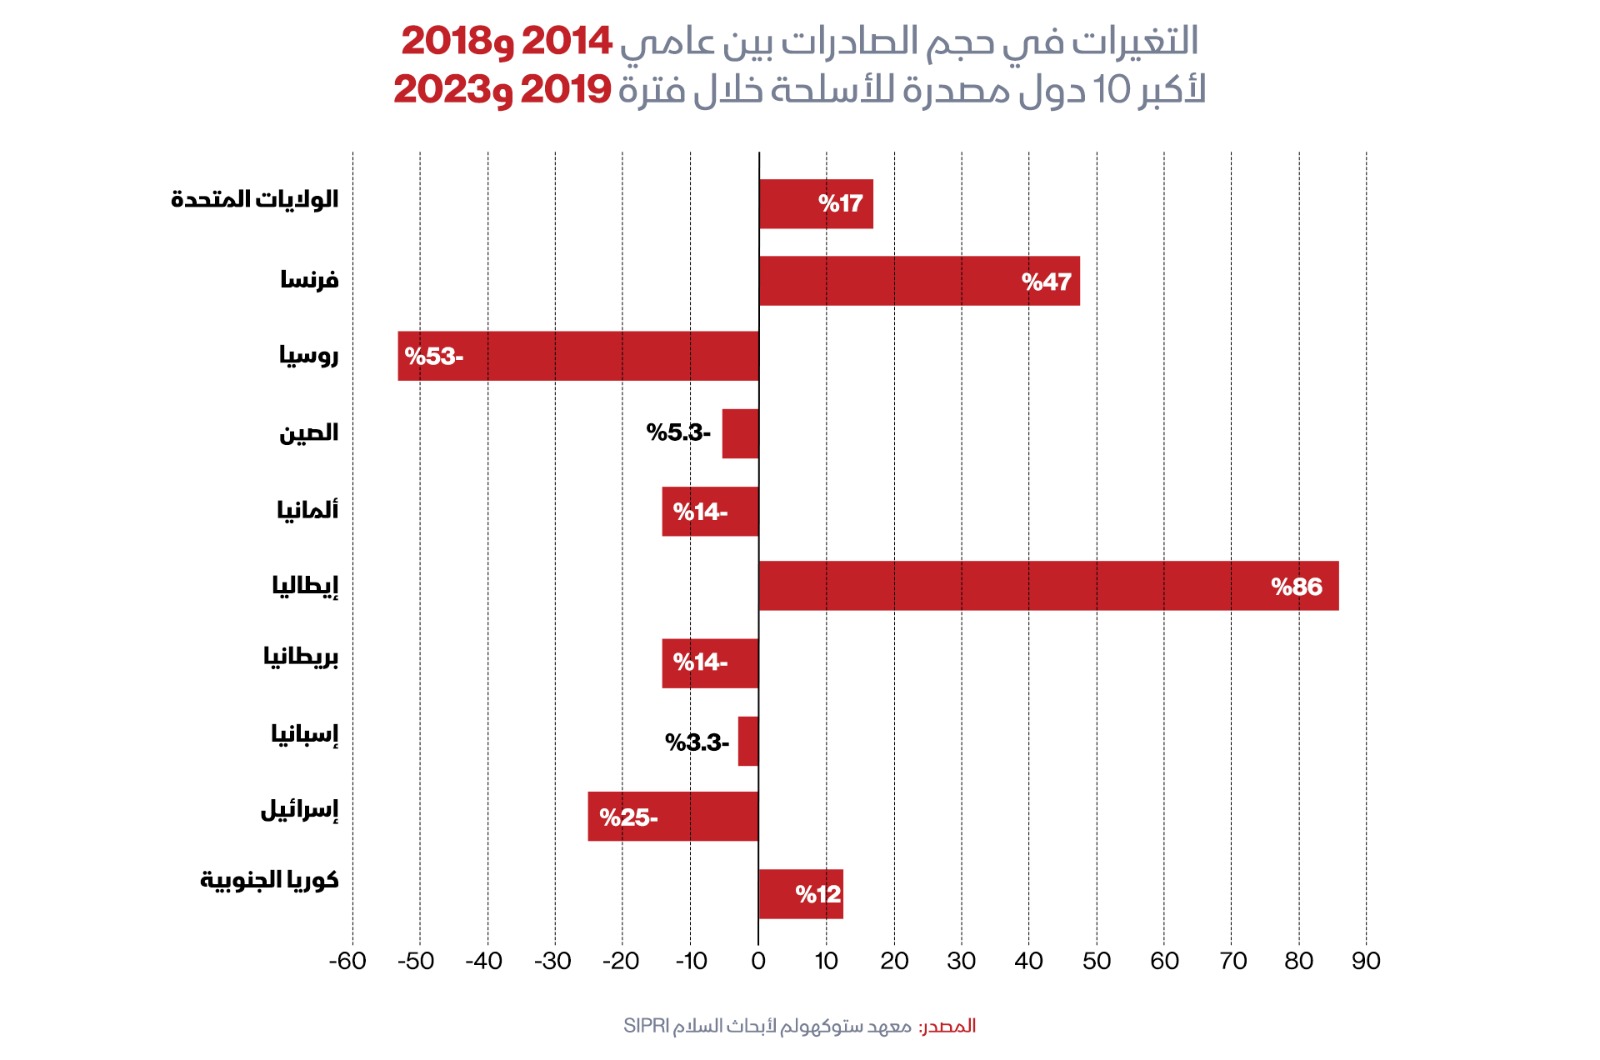 التغيرات في حجم الصادرات بين عامي 2014 و2018 لأكبر 10 دول مصدرة للأسلحة خلال الفترة بين 2019 - 2023